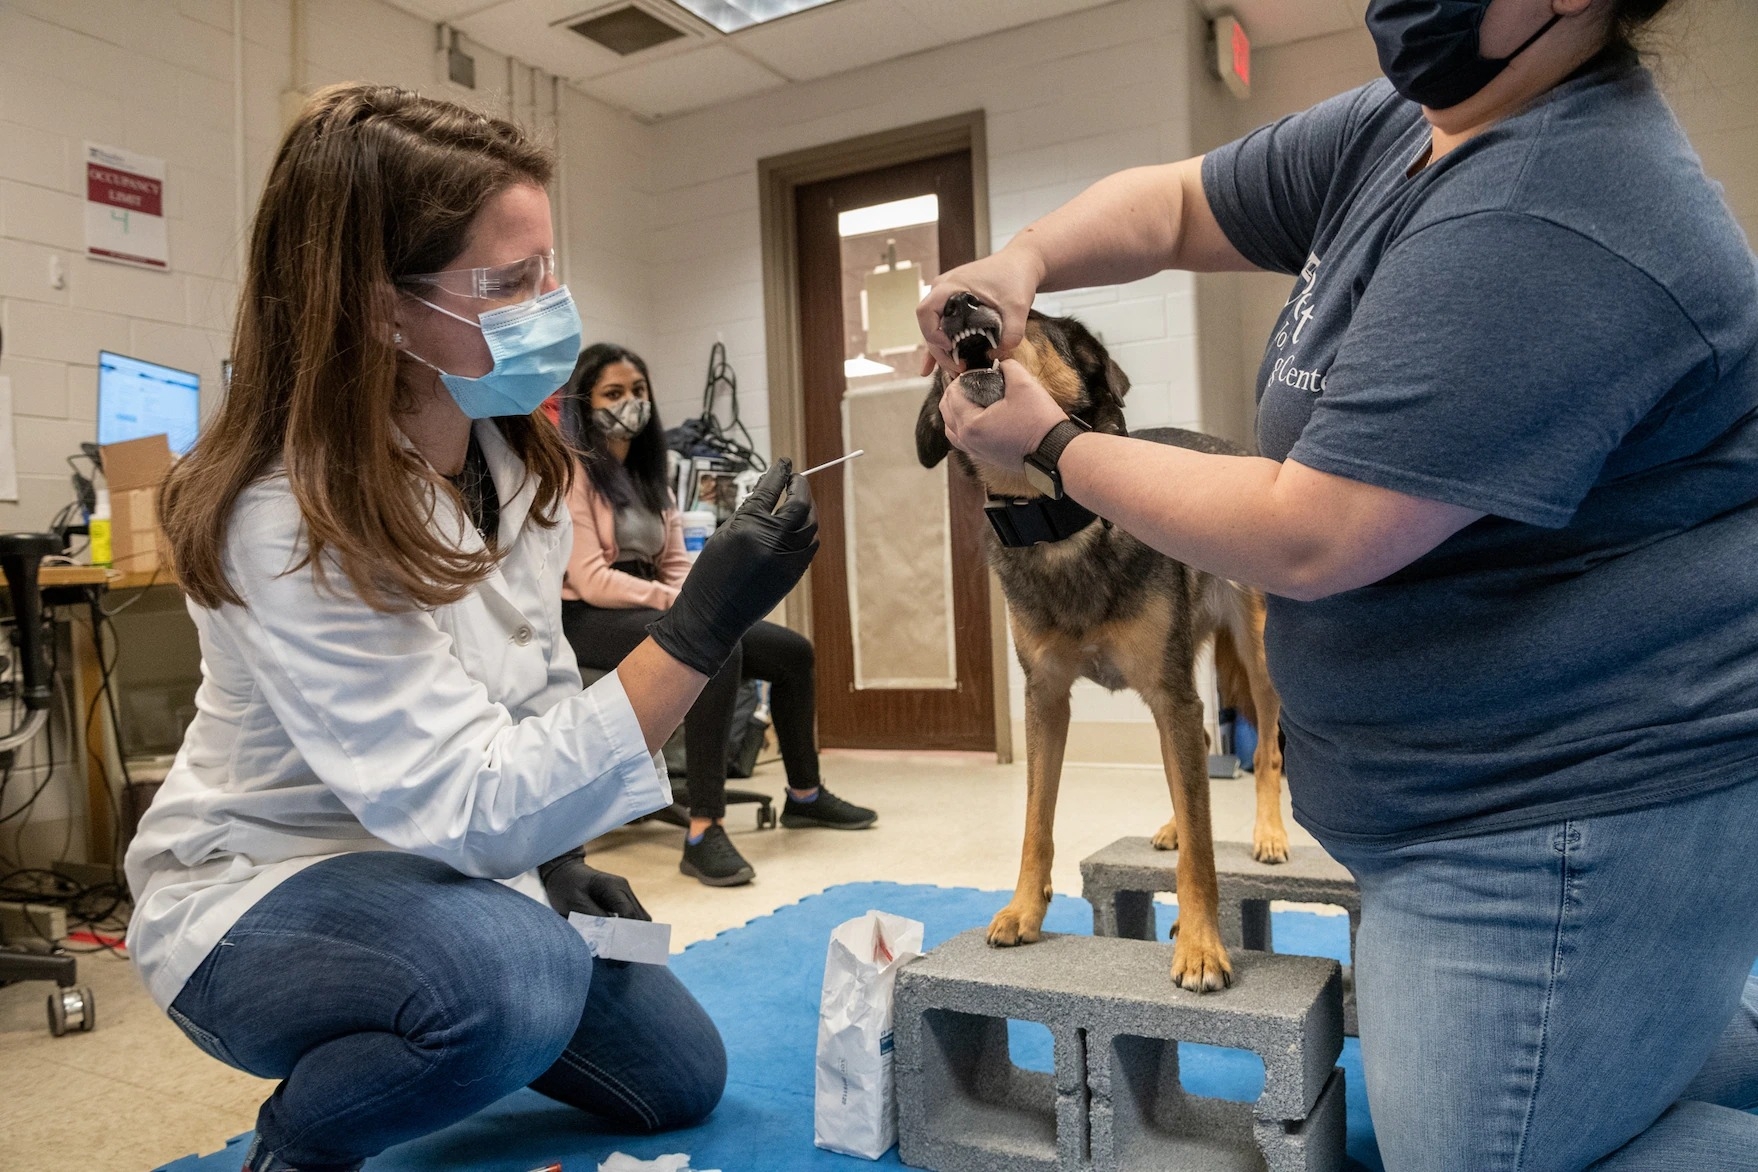 工作犬中心的運動醫學與復健科住院醫生梅根．拉莫斯（Meghan Ramos）在圖卡的口腔內以拭子採樣，而圖卡的飼主艾斯勒則幫忙固定圖卡。圖卡剛加入這項氣味研究。艾斯勒說：「看著牠奮力學習這一切是很有趣的事，因為從在家使用基本嗅覺到能夠嗅出COVID，就像是從基礎數學到微積分一樣。」